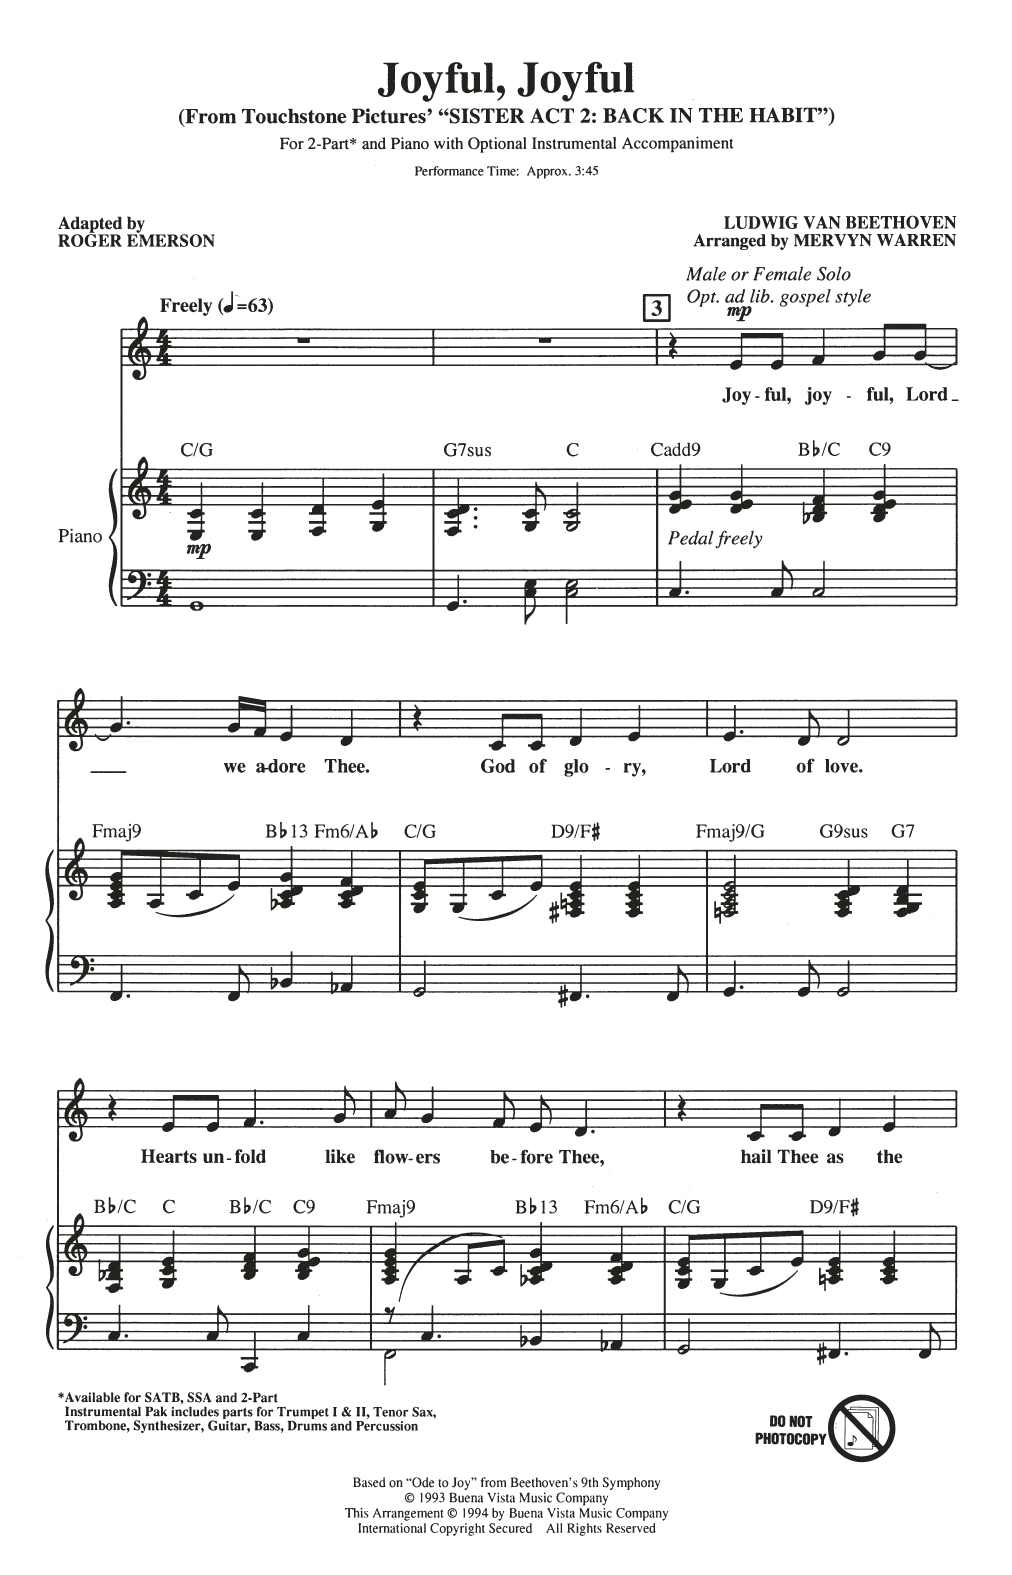 Mervyn Warren Joyful, Joyful (from Sister Act 2) (arr. Roger Emerson) Sheet Music Notes & Chords for SSA Choir - Download or Print PDF